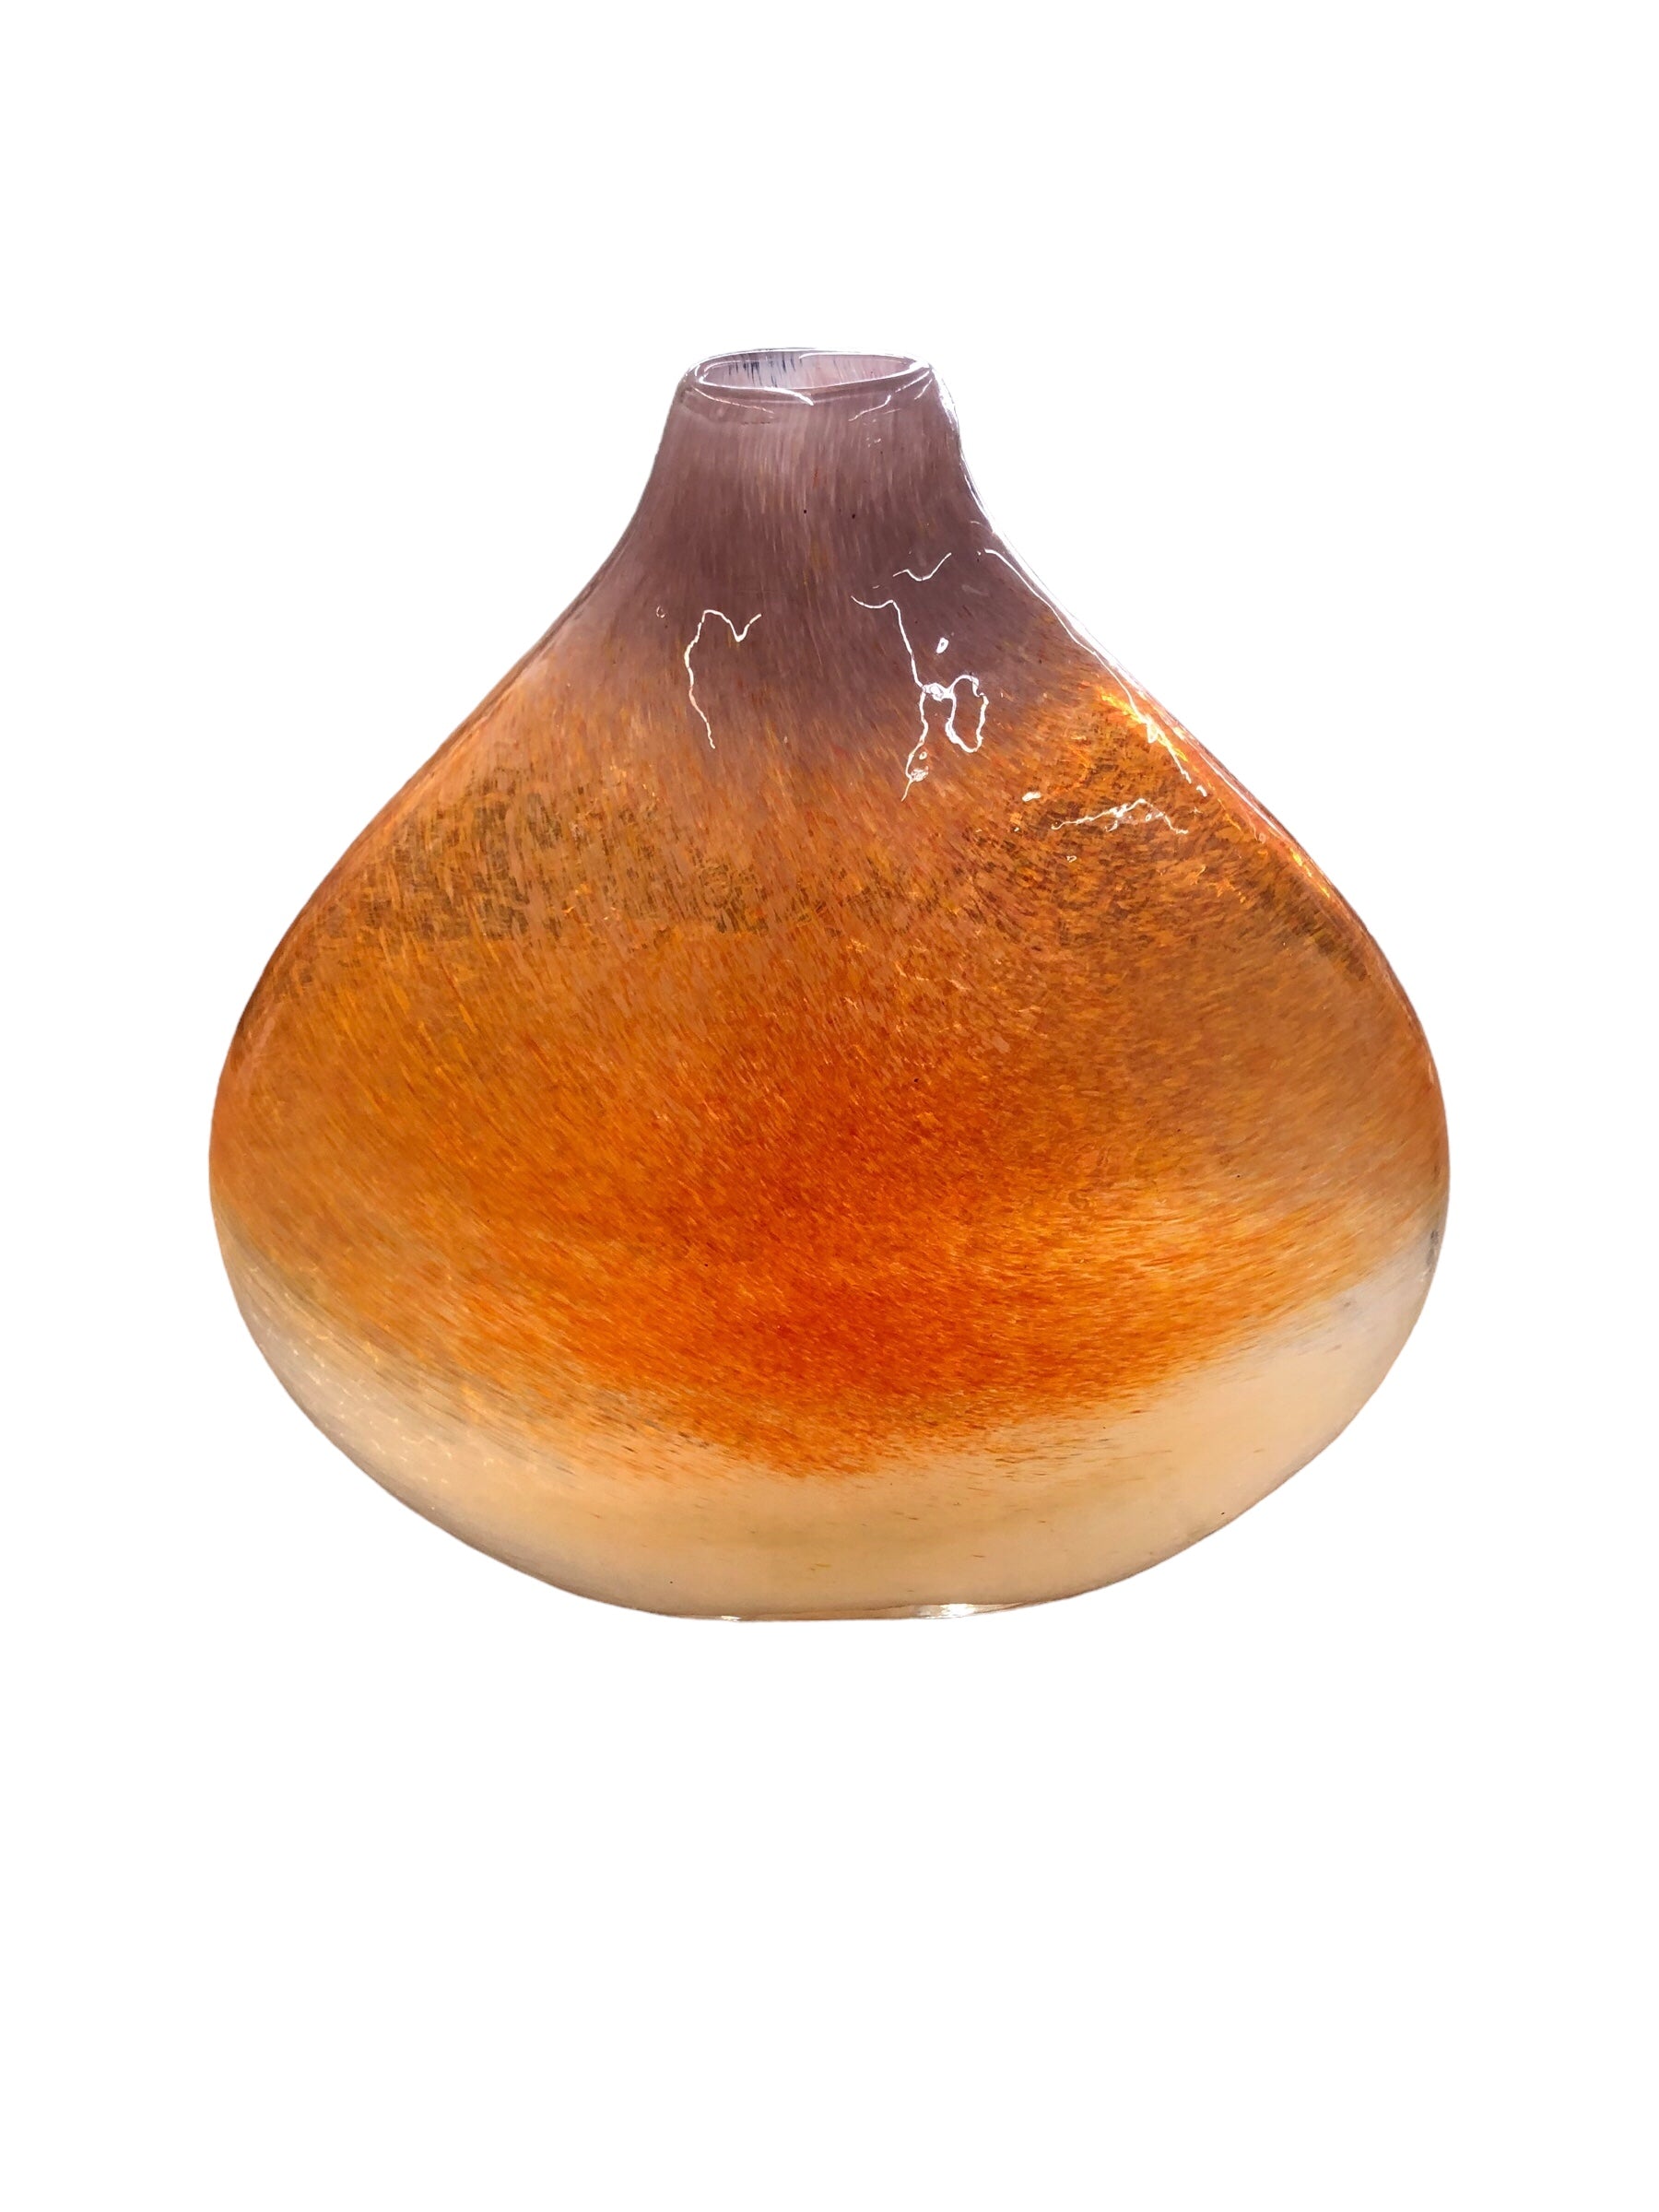 Orange /cream/ clear vase